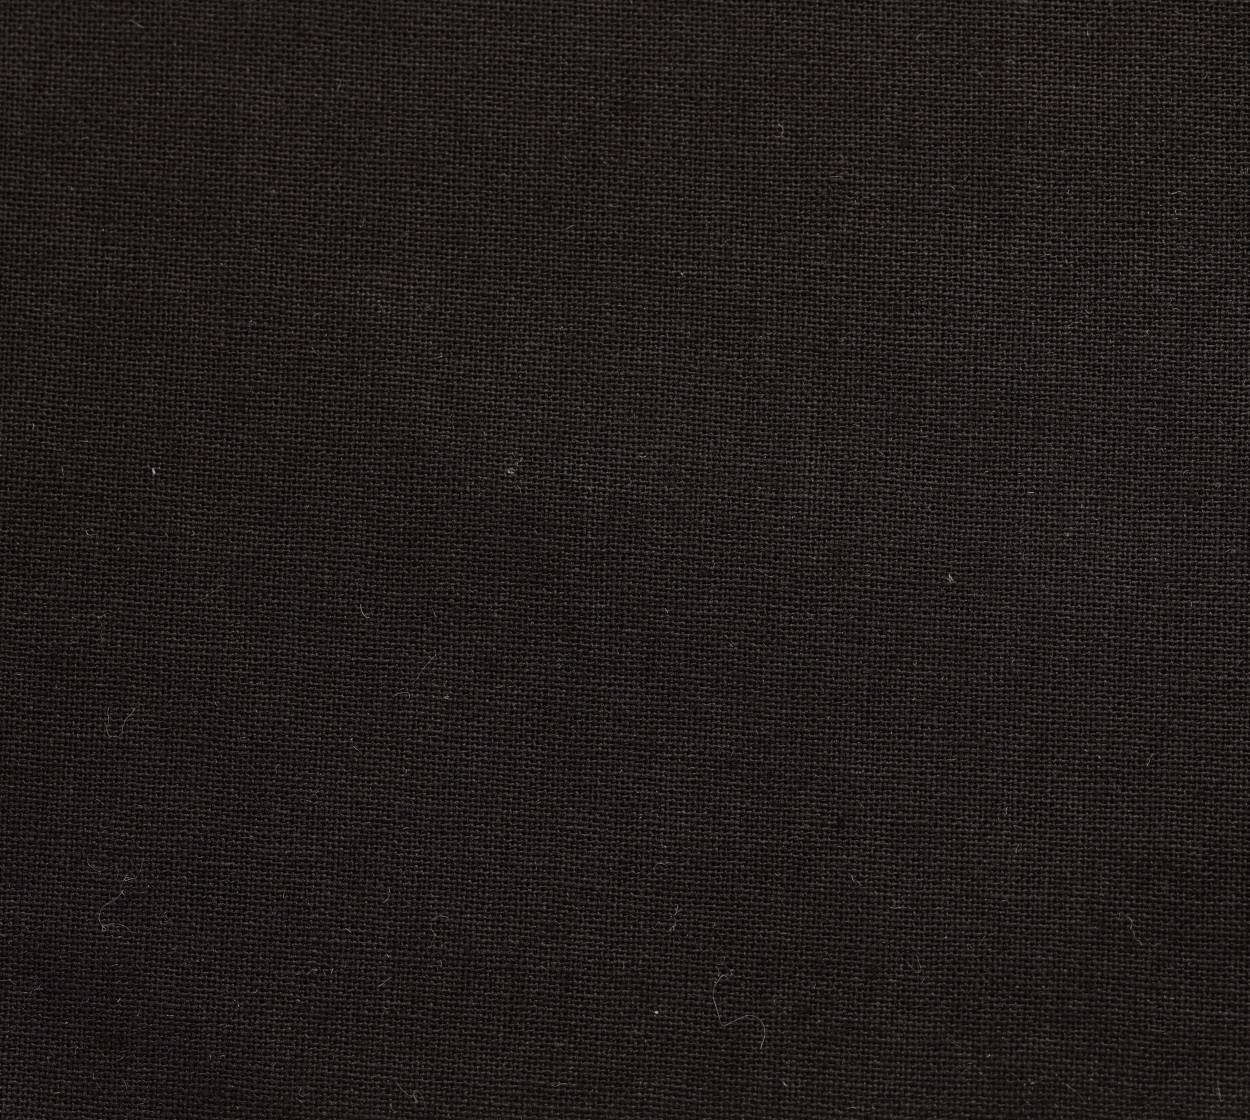 Nessel CS schwarz 347, 3,10 m breit, 6T19 im Stamm online Store München